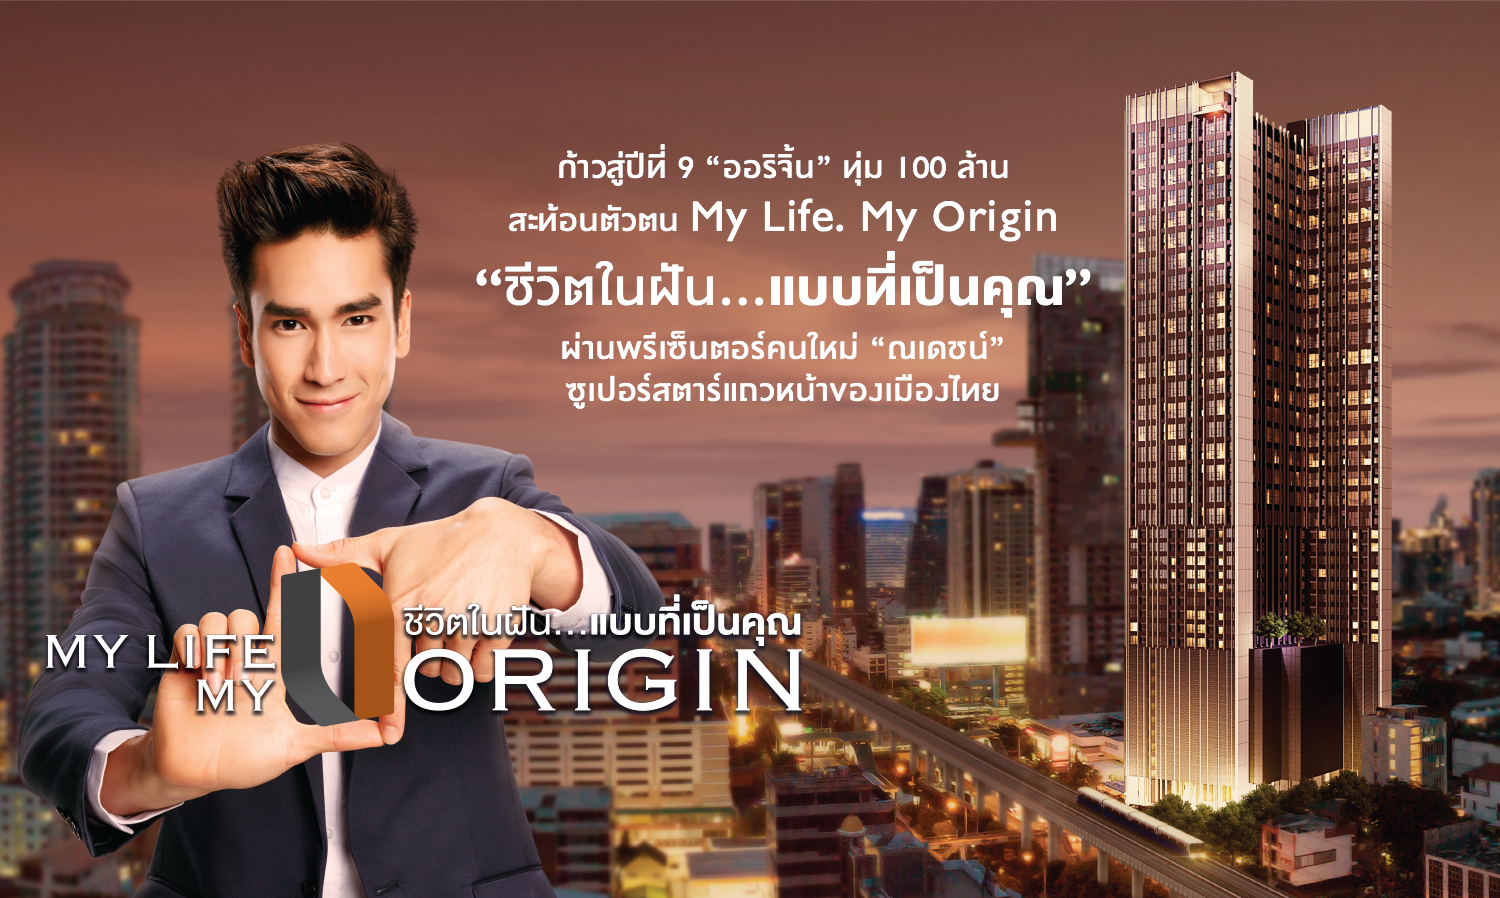 ก้าวสู่ปีที่ 9 “ ออริจิ้น ” ทุ่ม 100 ล้าน สะท้อนตัวตน My Life. My Origin ชีวิตในฝัน...แบบที่เป็นคุณ  ผ่านพรีเซ็นตอร์คนใหม่ “ณเดชน์” ซูเปอร์สตาร์แถวหน้าของเมืองไทย